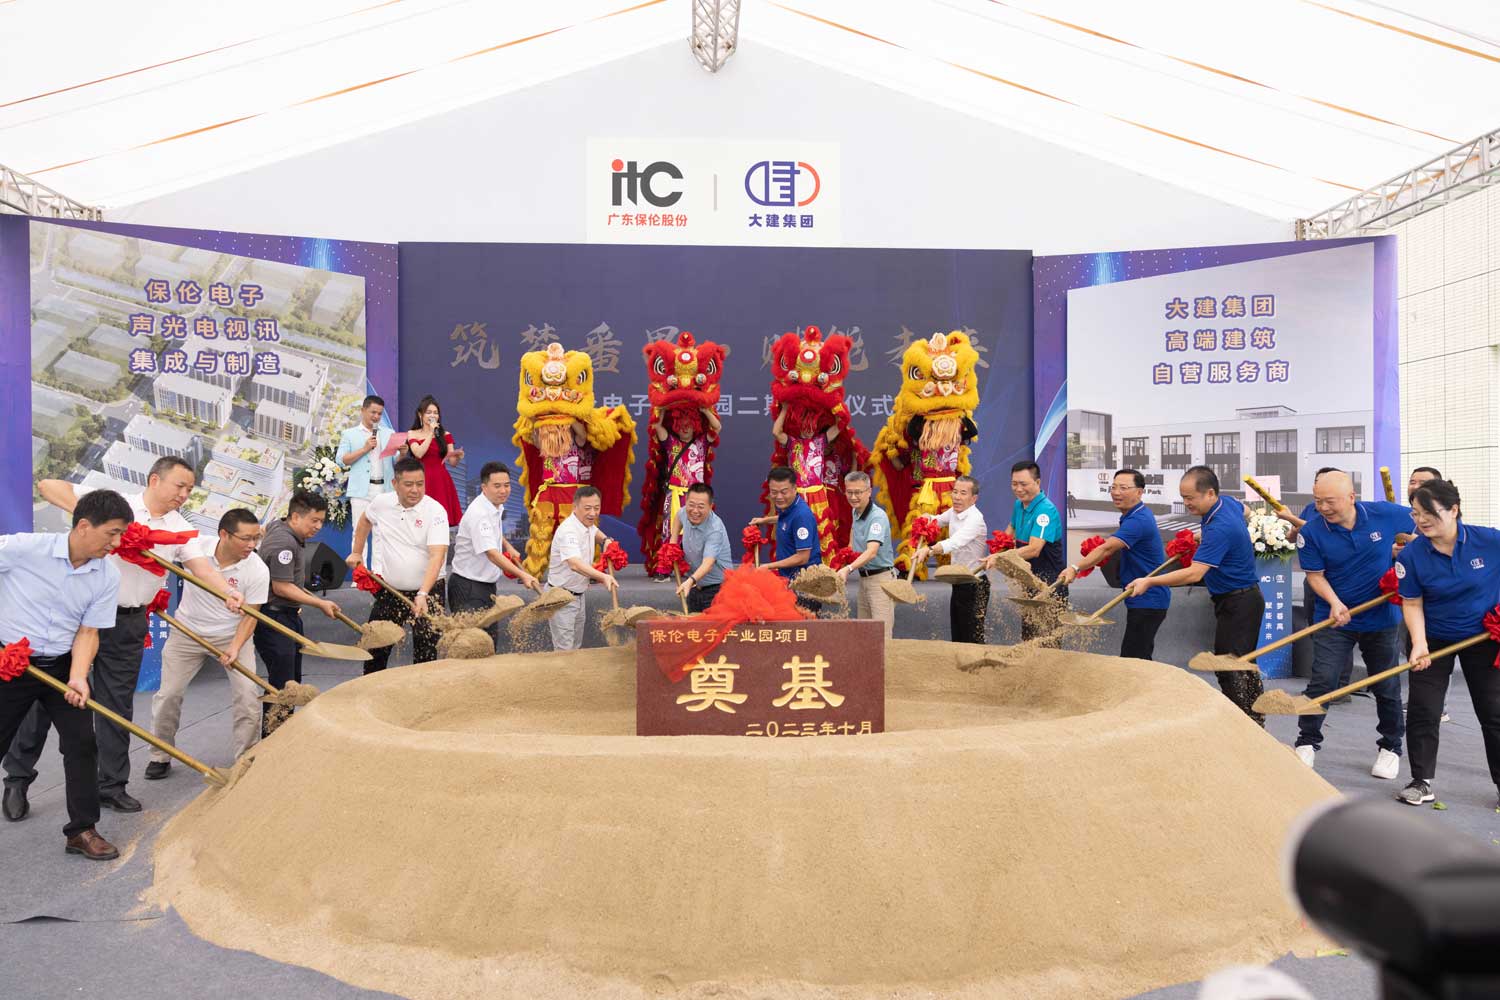 ¡Una gran noticia! ¡Felicitaciones por la exitosa ceremonia de inauguración de la Fase 2 del Parque Industrial Electrónico Bao Lun de itc!